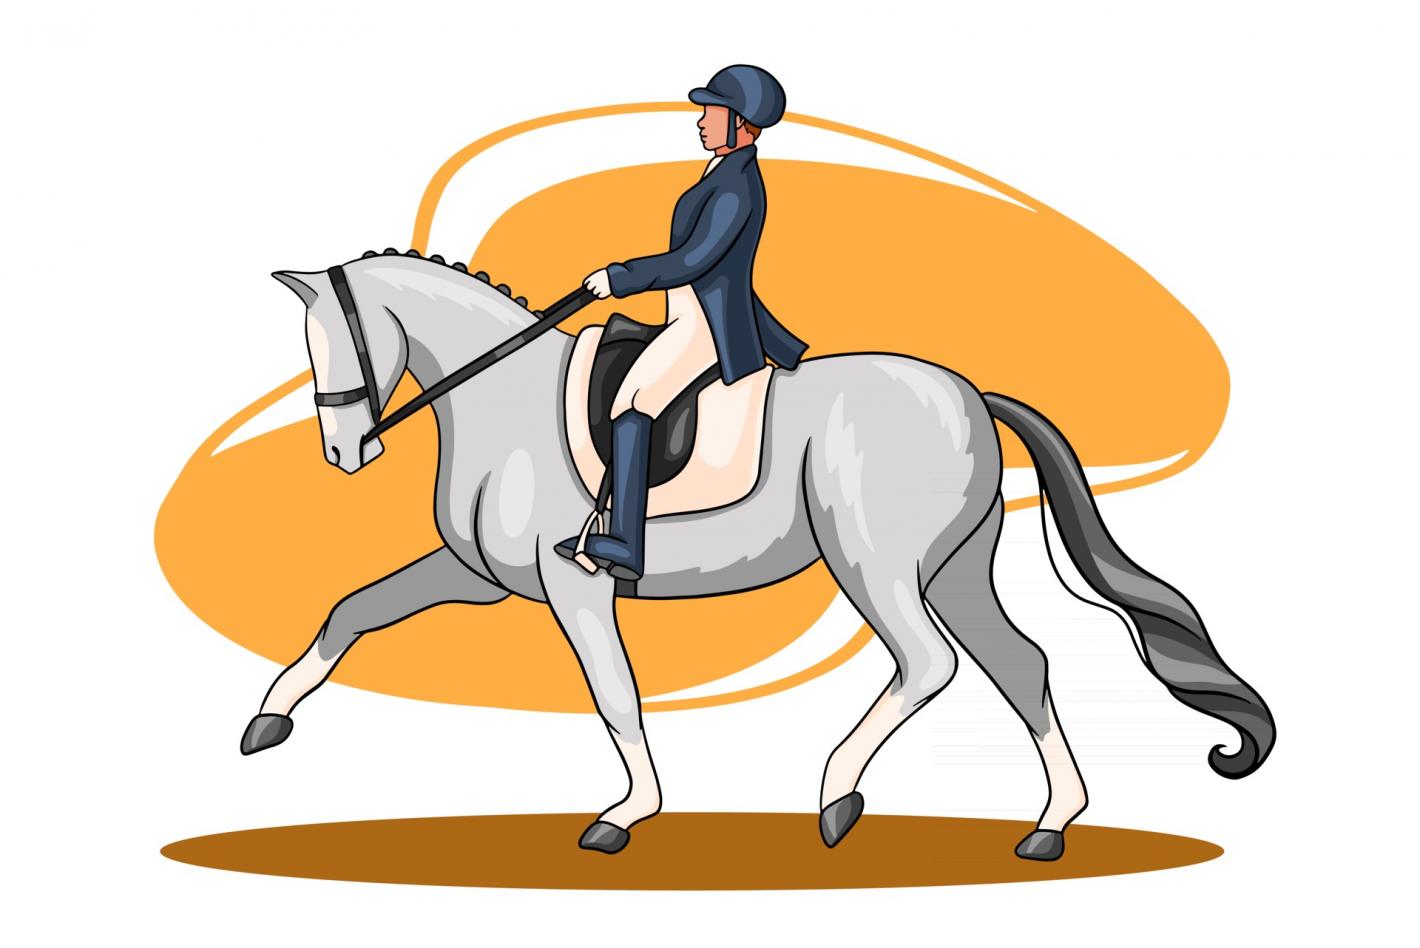 images/calabria/Dressage/medium/2435600-equitazione-donna-equitazione-dressage-cavallo-in-stile-cartone-animato-vettoriale.jpg